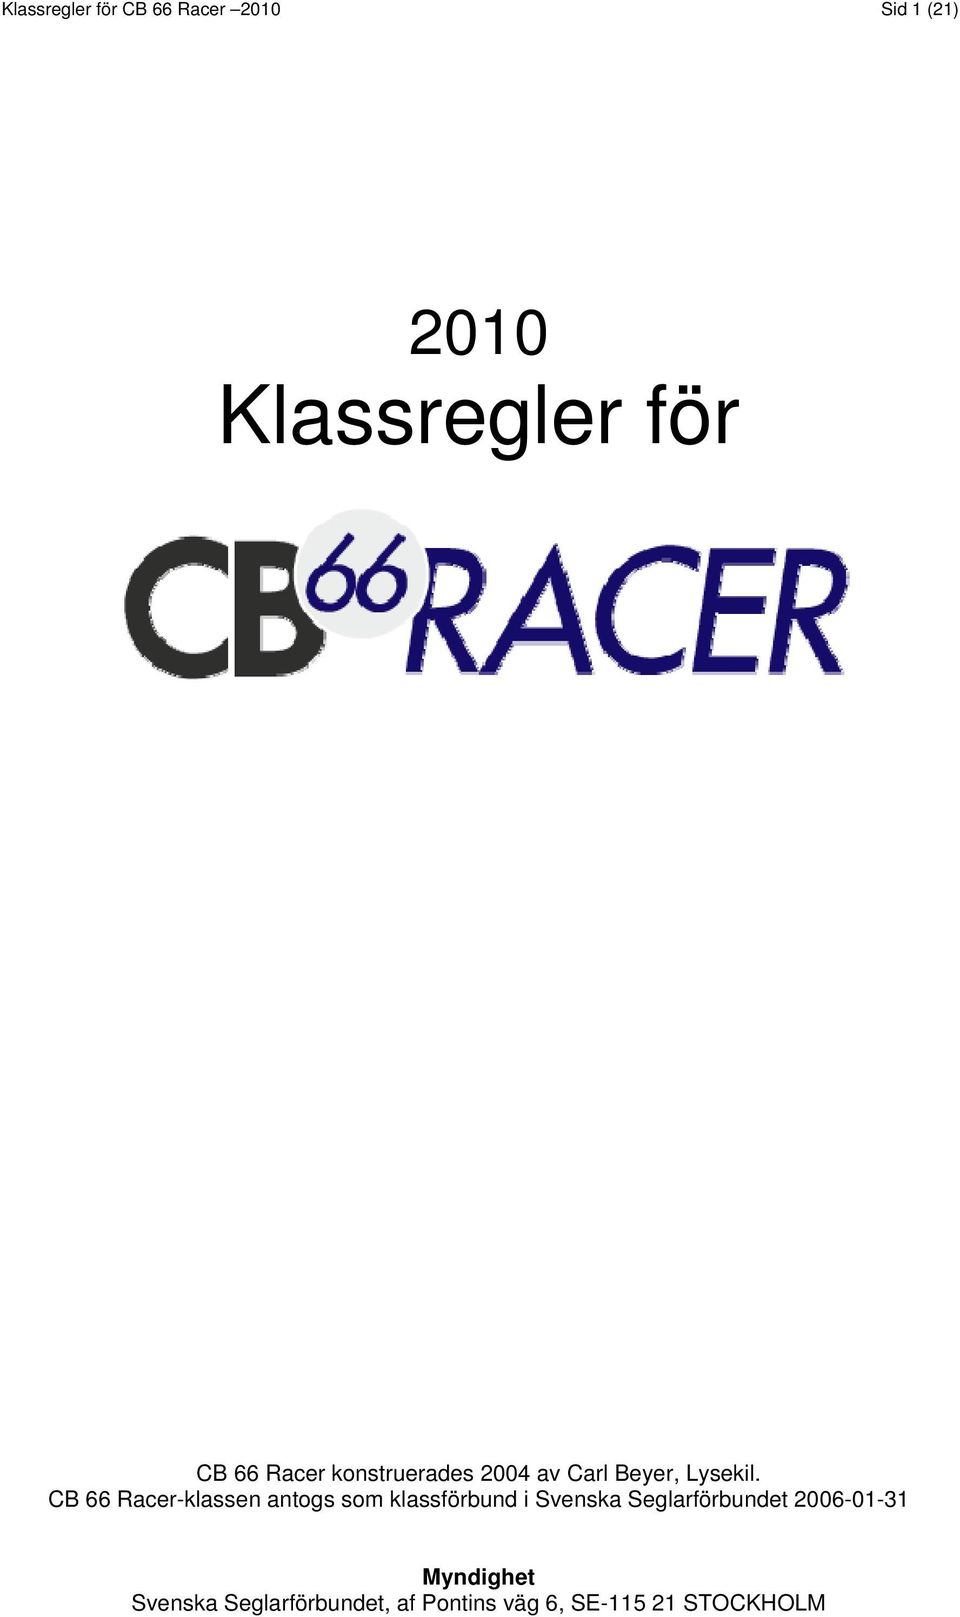 CB 66 Racer-klassen antogs som klassförbund i Svenska